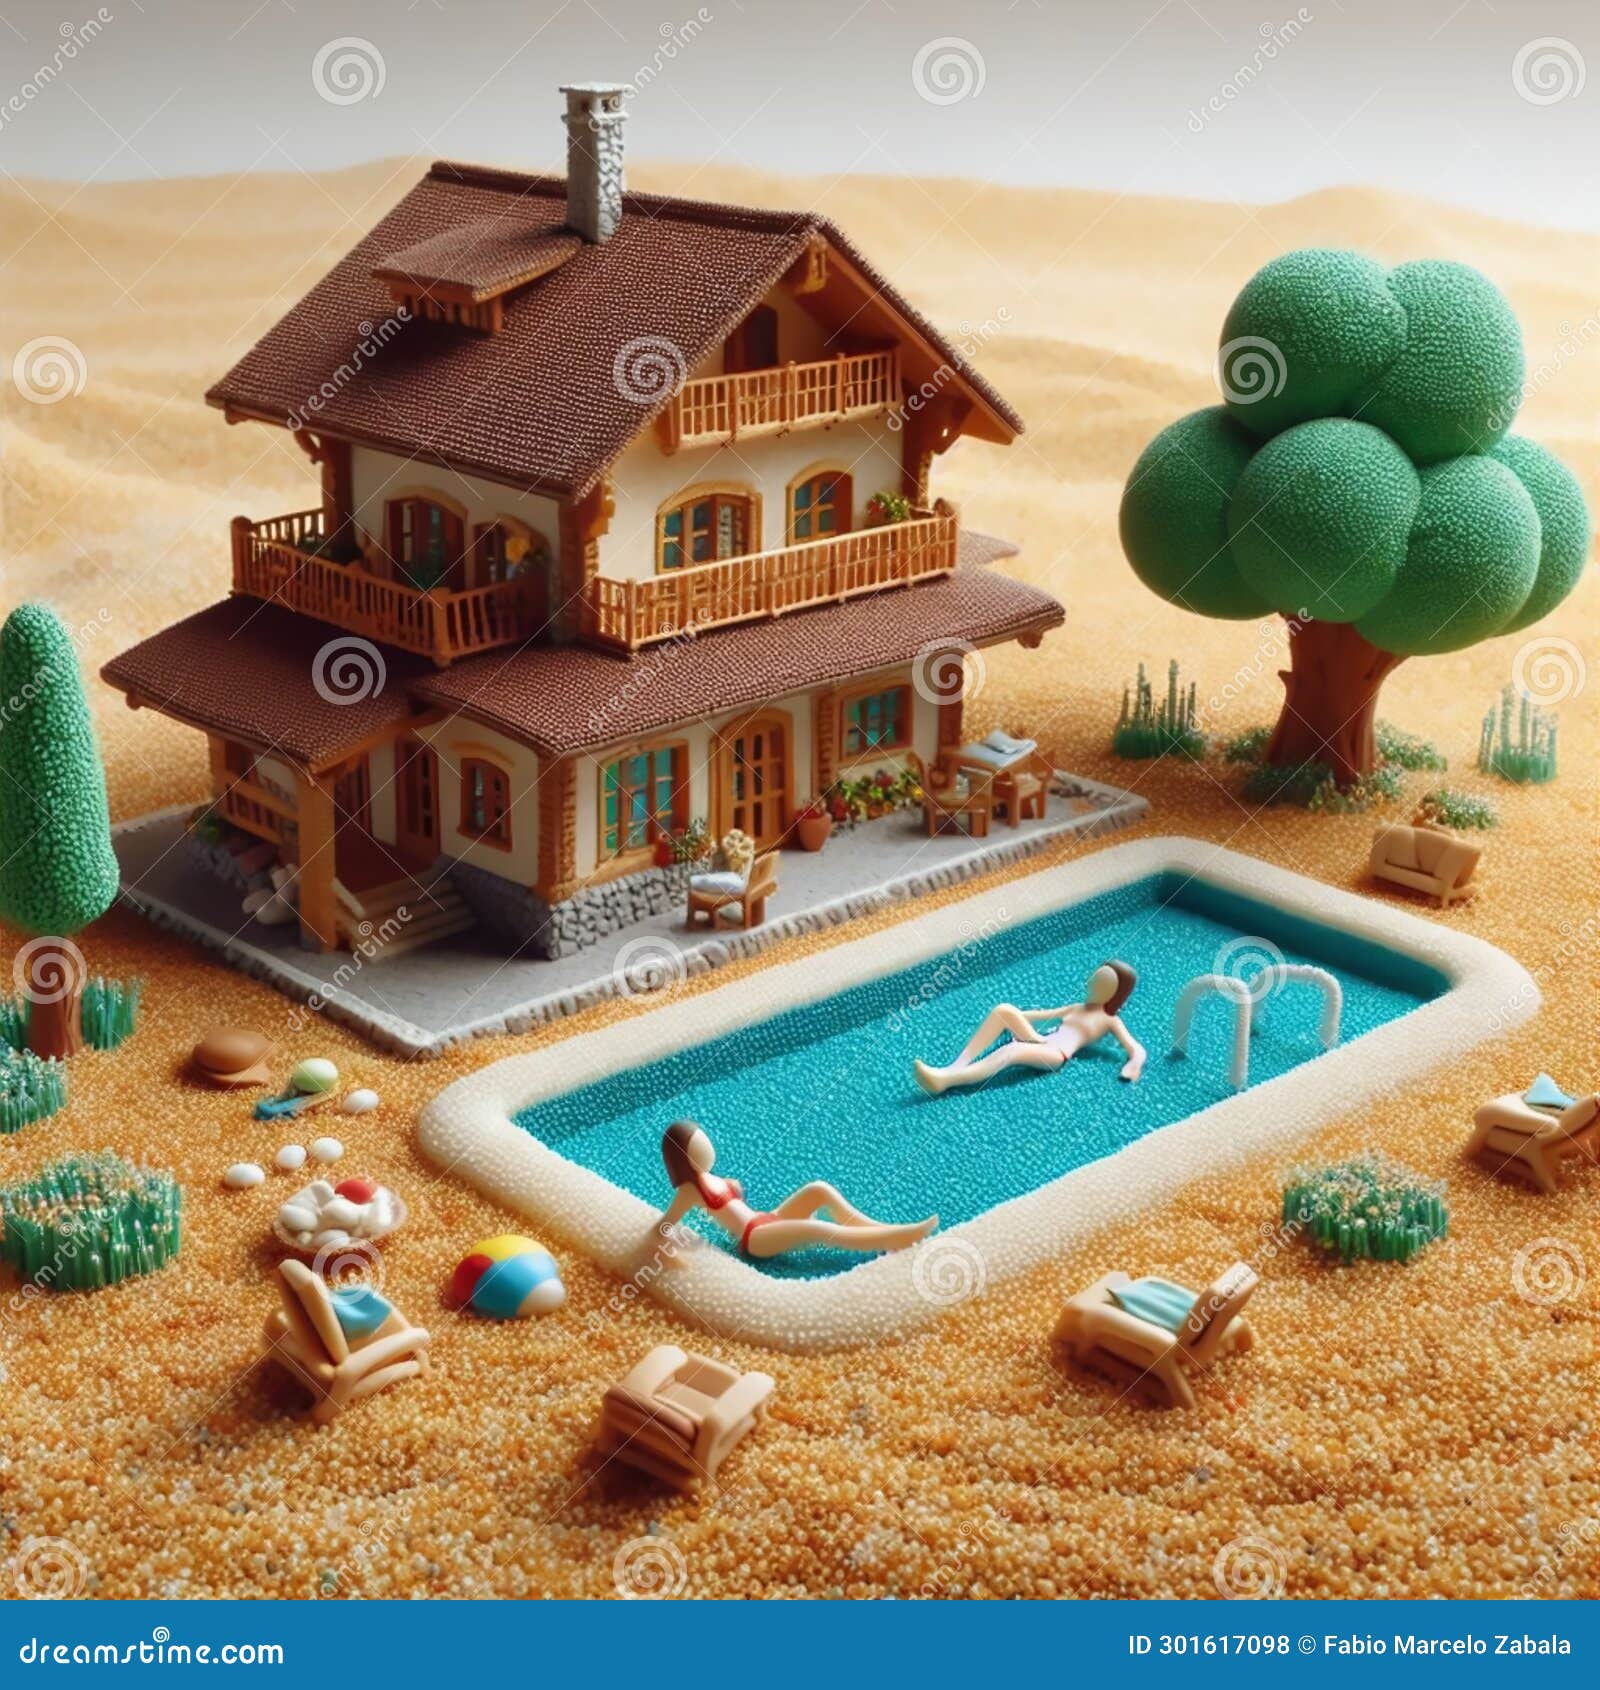 granolandia una escena de verano en miniatura hecha con granos